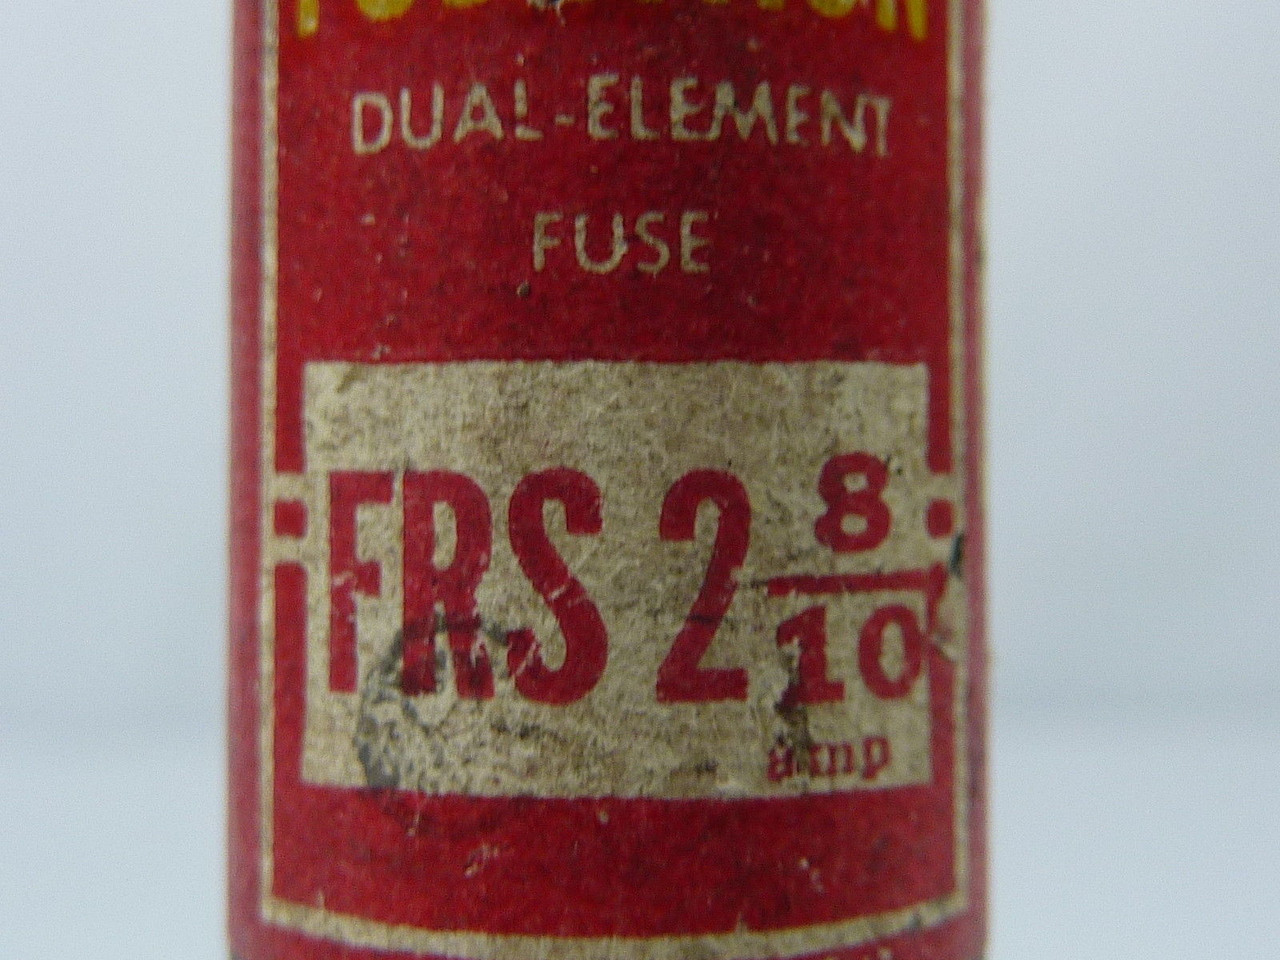 Fusetek FRS-2-8/10 Dual Element Time Delay Fuse 2.8A 600V USED